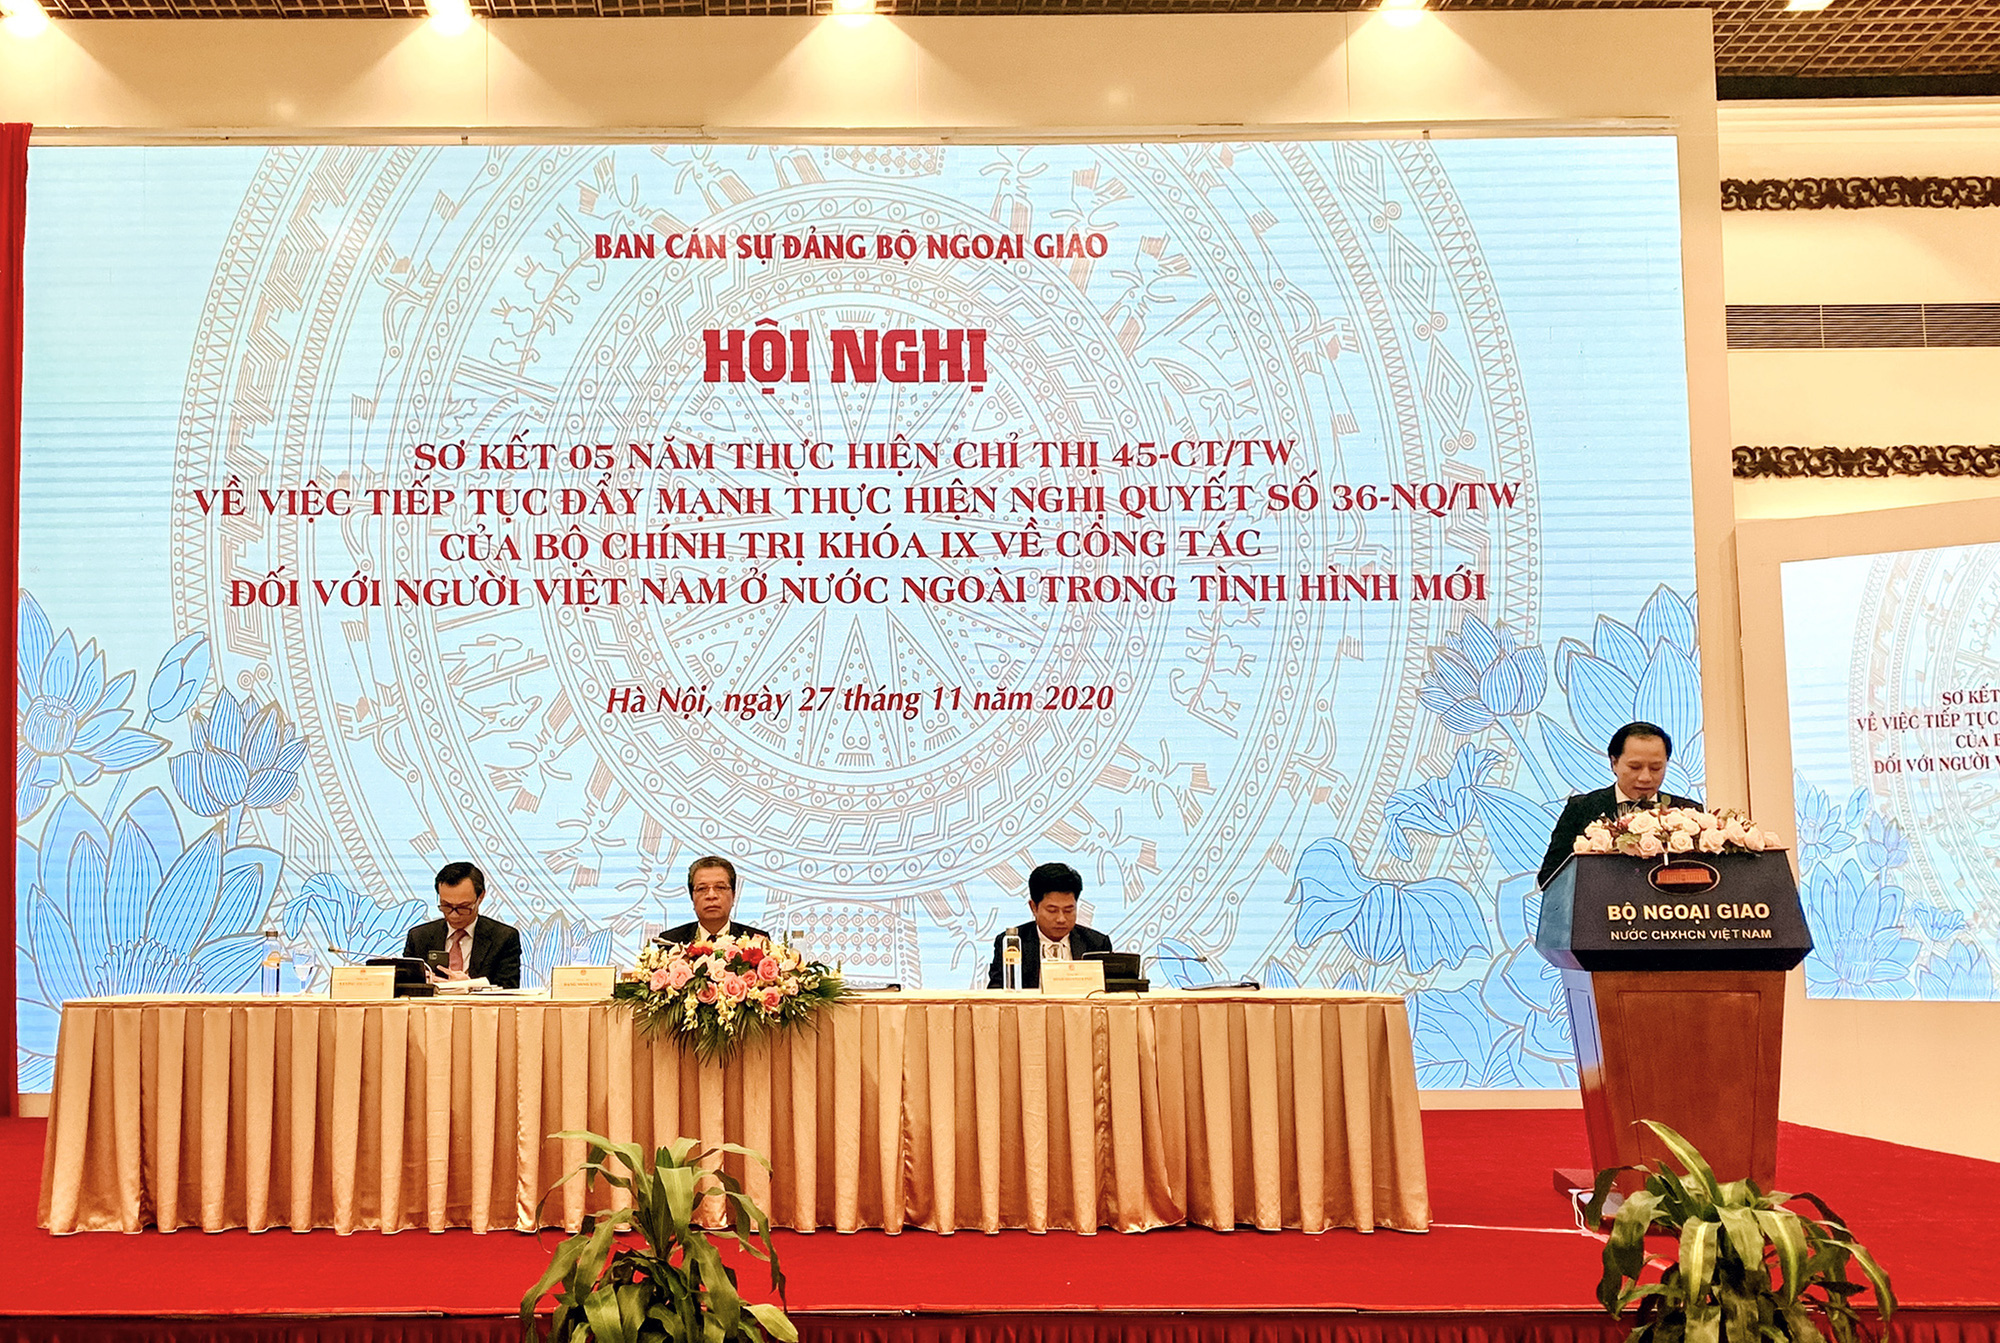 Bộ Văn hóa, Thể thao và Du lịch tham dự Hội nghị sơ kết 05 năm thực hiện Chỉ thị 45-CT/TW về công tác đối với người Việt Nam ở nước ngoài